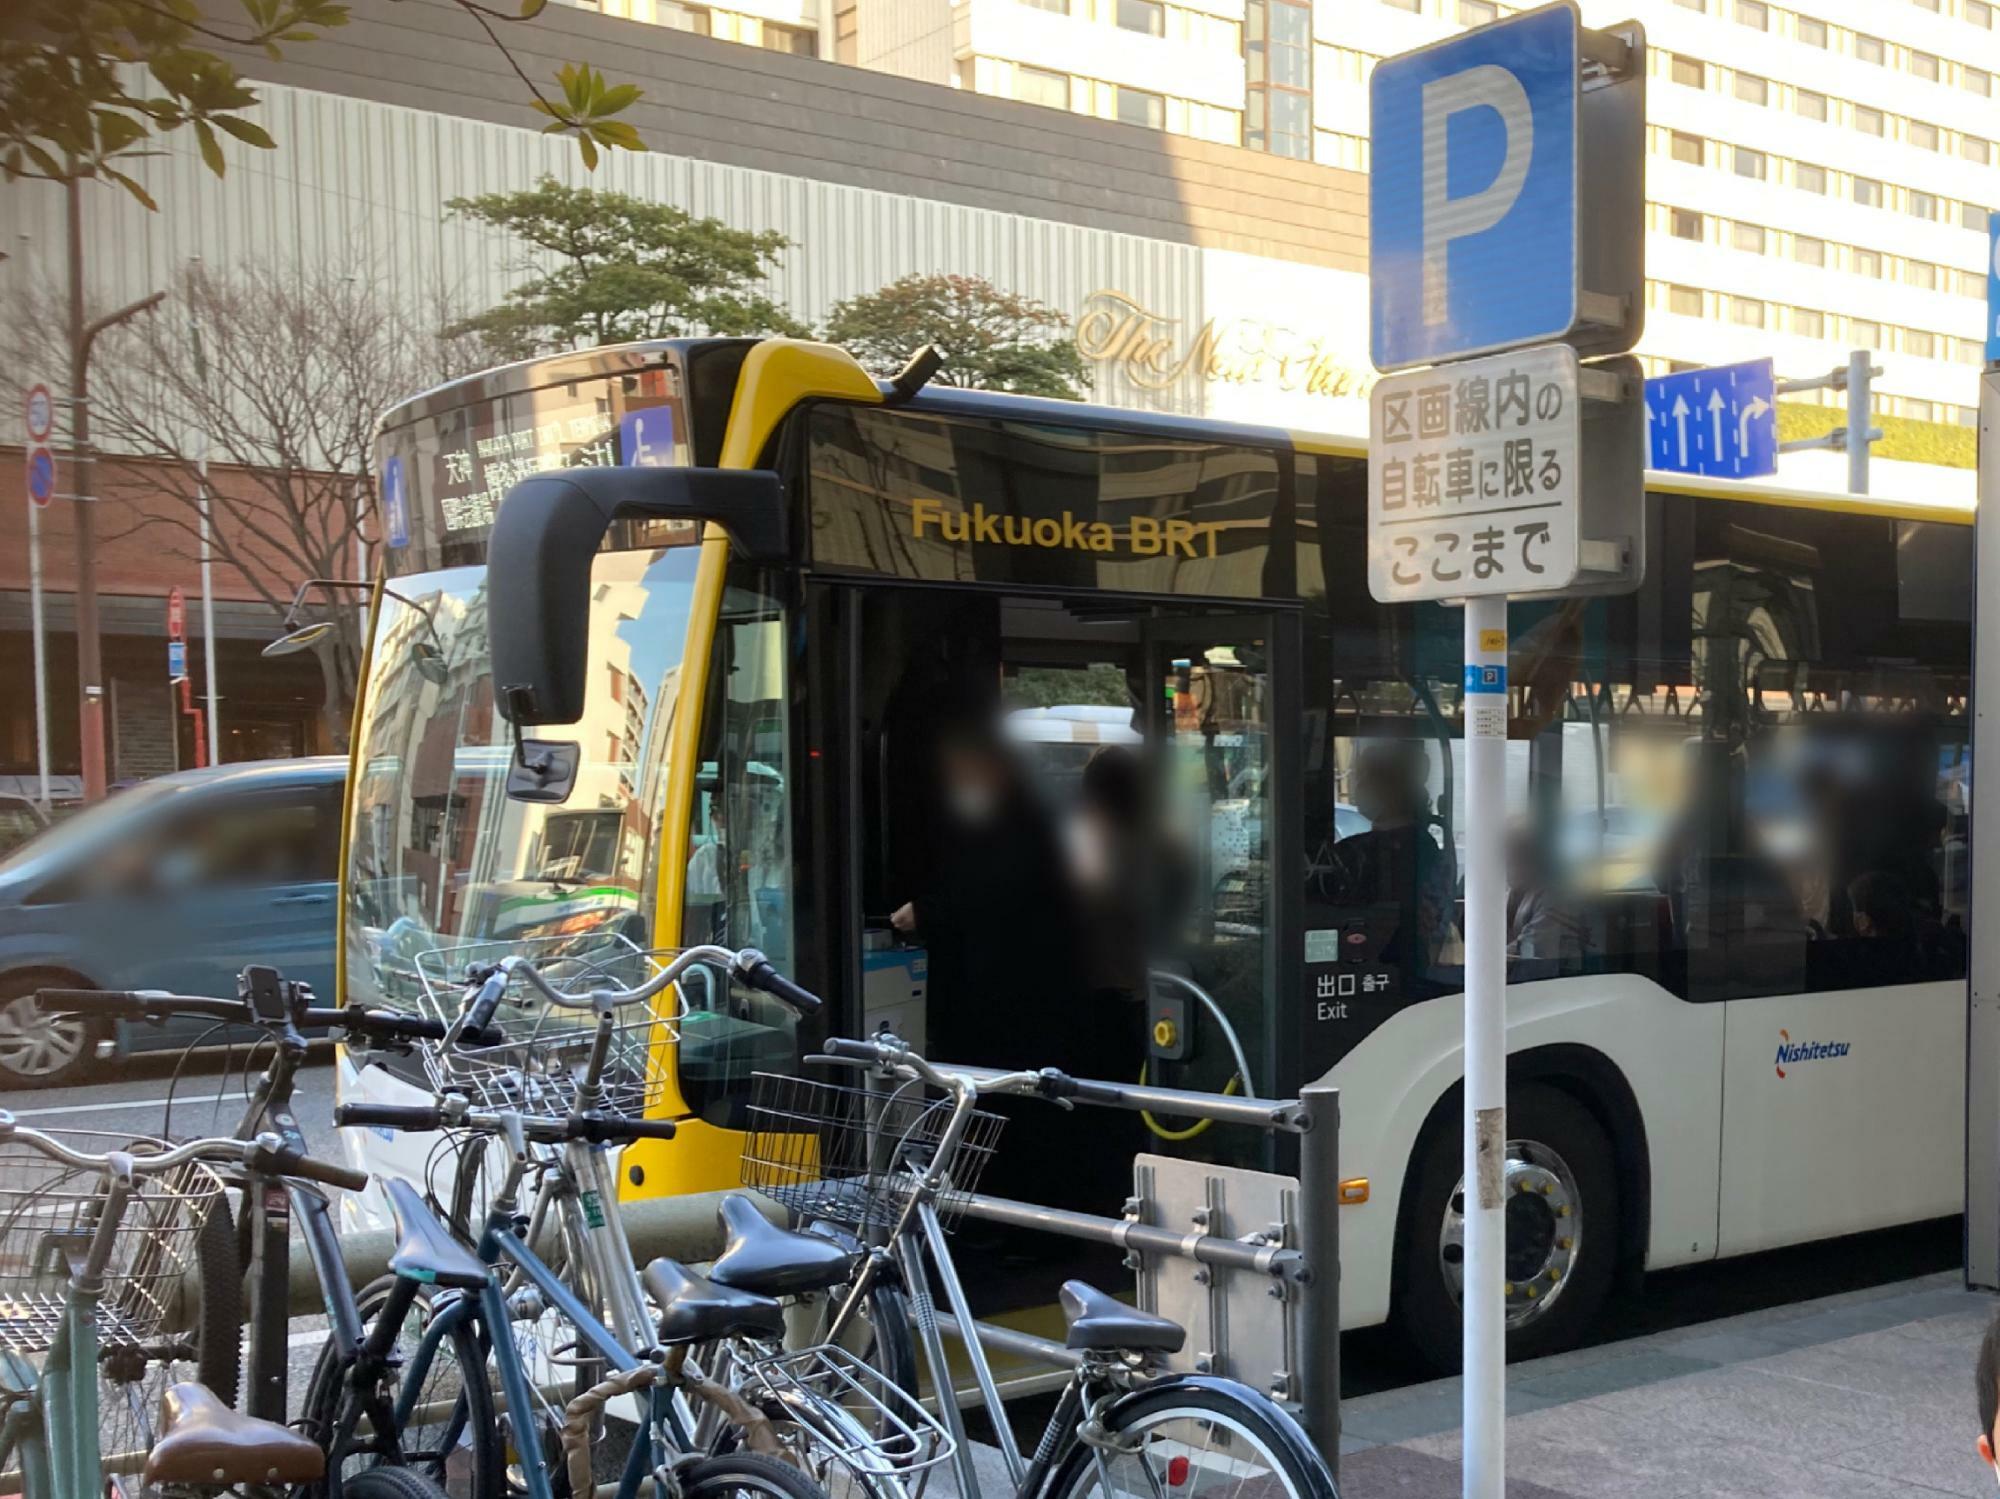 天神地区・博多地区で運行されている連節バス「Fukuoka BRT」